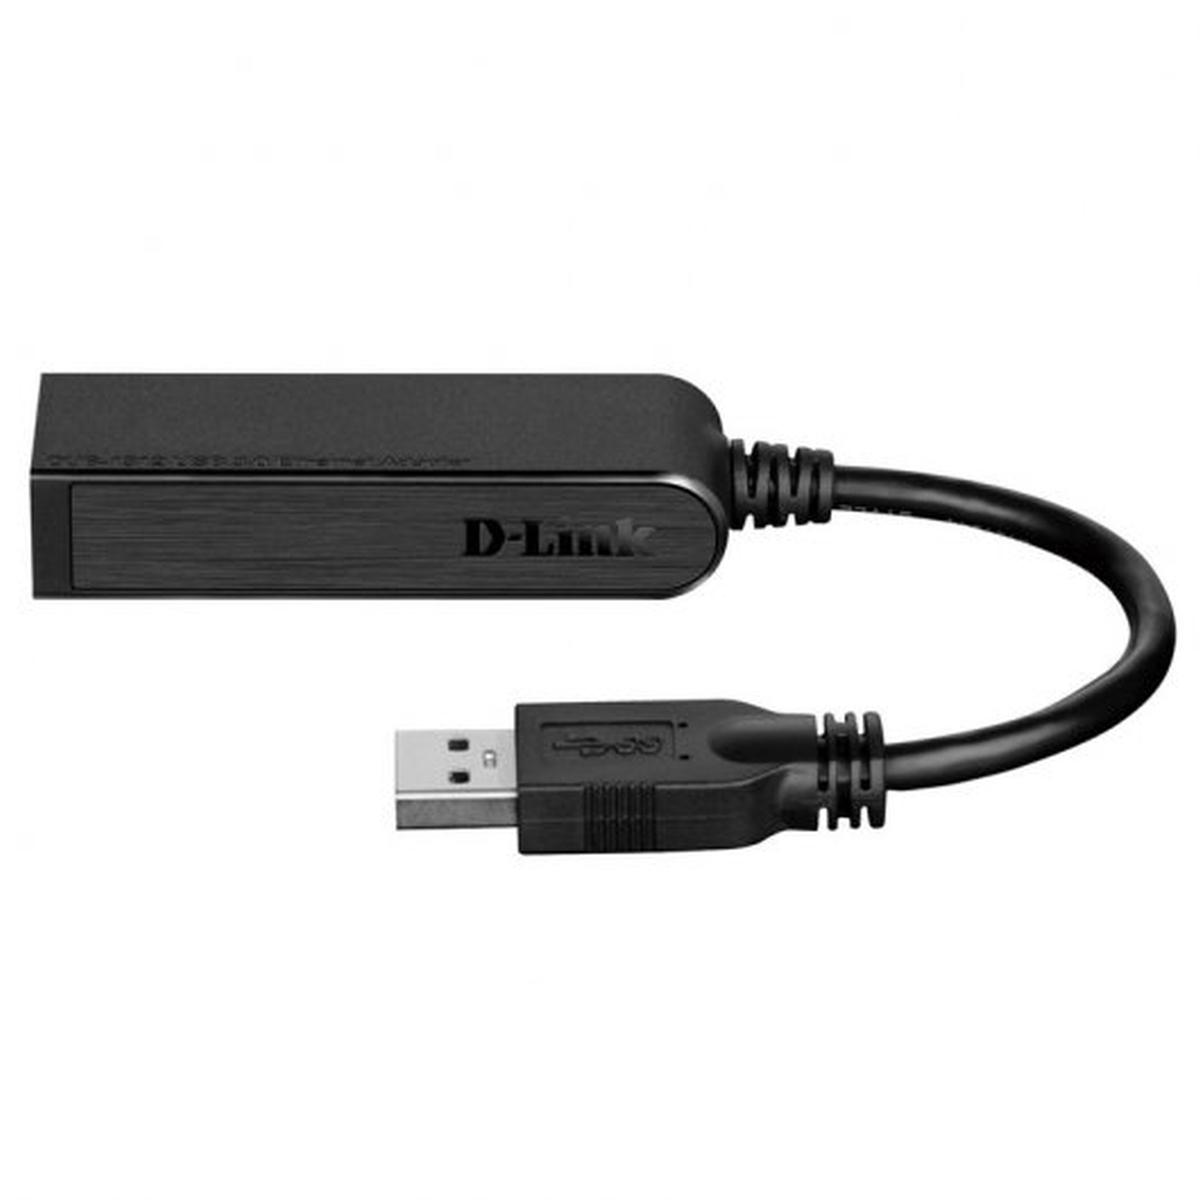 Adattatore D-Link USB 3.0 a Gigabit Ethernet